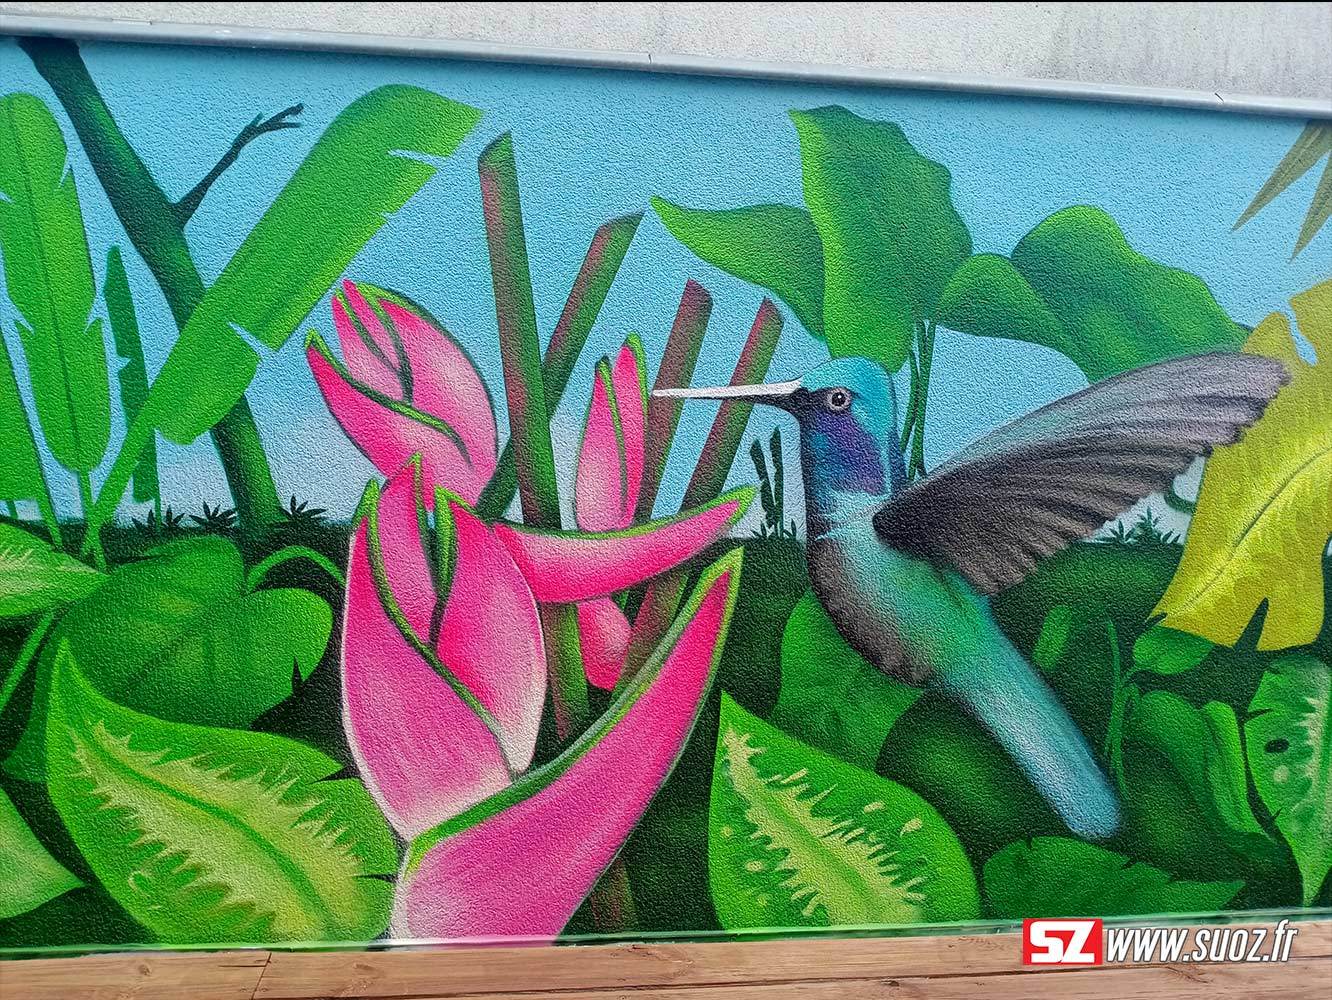 6-graffeur-professionel-suoz-jungle-fleur-tropical-fleur-colibiri-la-rochelle-france-decor-graffiti